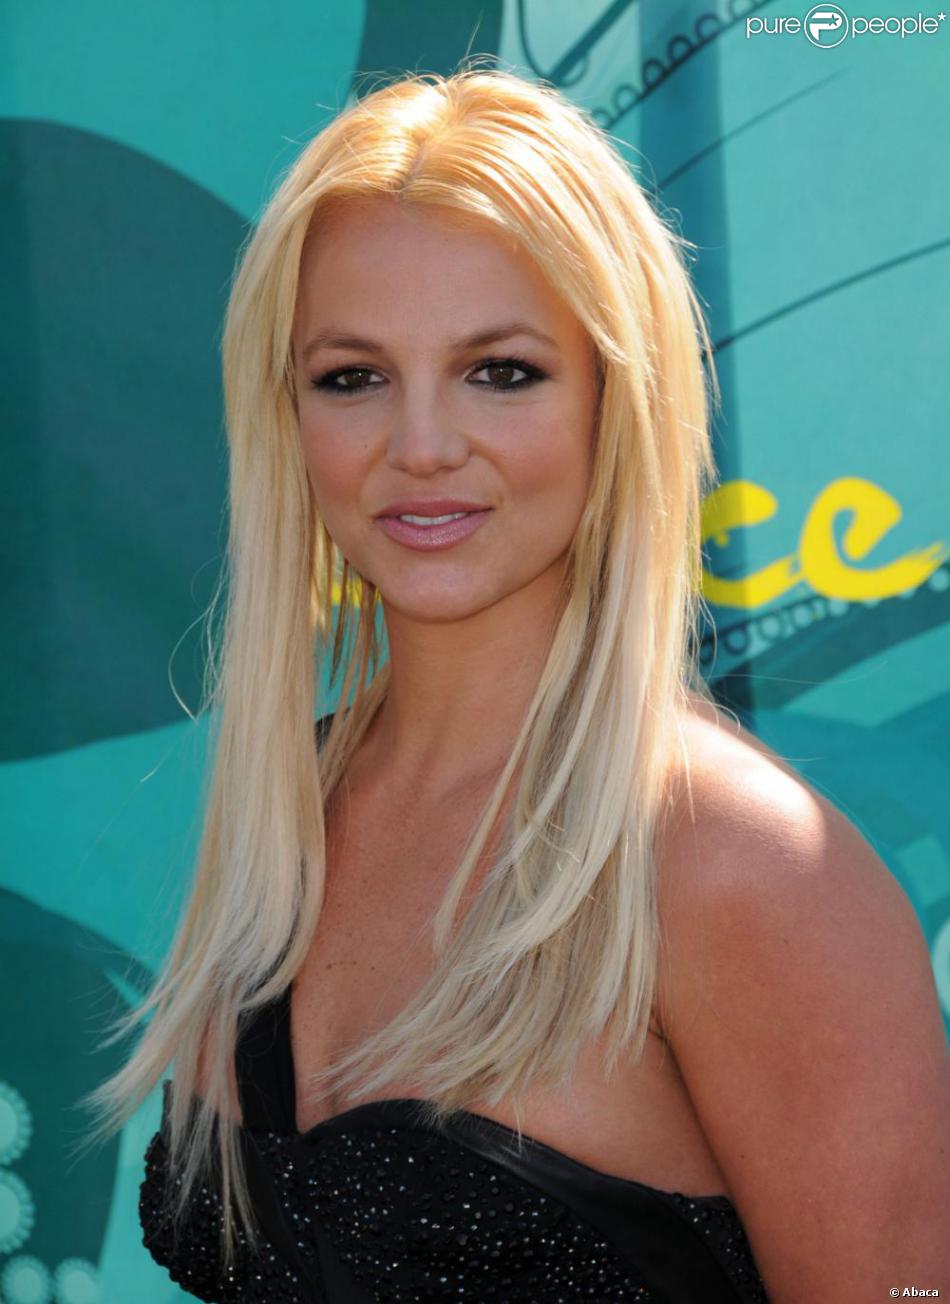 La palme du mariage éclair est décernée à... Miss Britney Spears ! Elle épouse Jason Alexander le 3 janvier 2004 à Las Vegas. De retour à la réalité, les &quot;fake&quot; tourtereaux décident de divorcer. Leur union n&#039;aura duré que... 55 heures !